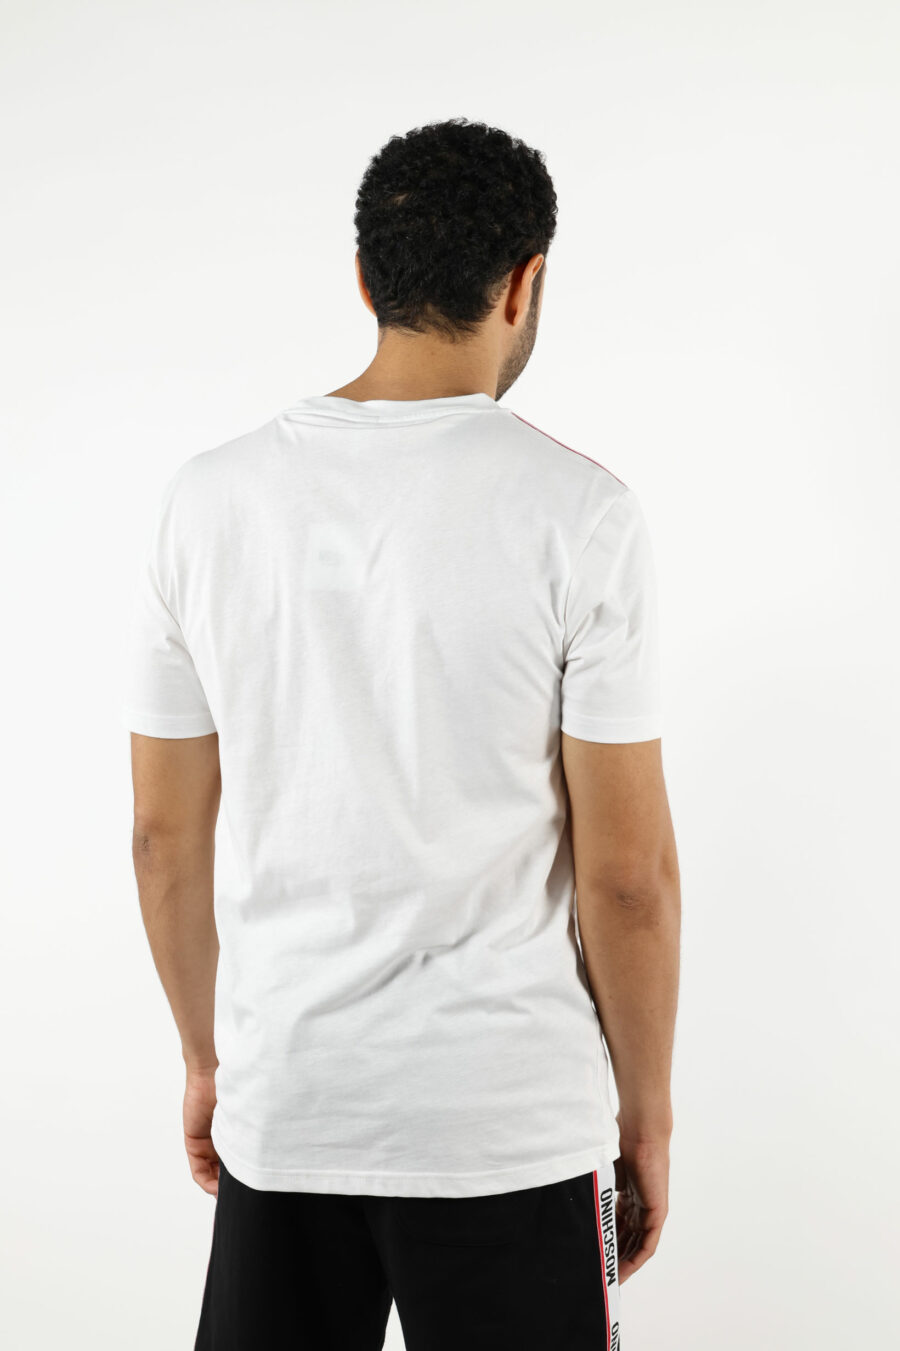 T-shirt blanc avec logo noir et ruban rouge sur les épaules - 110991